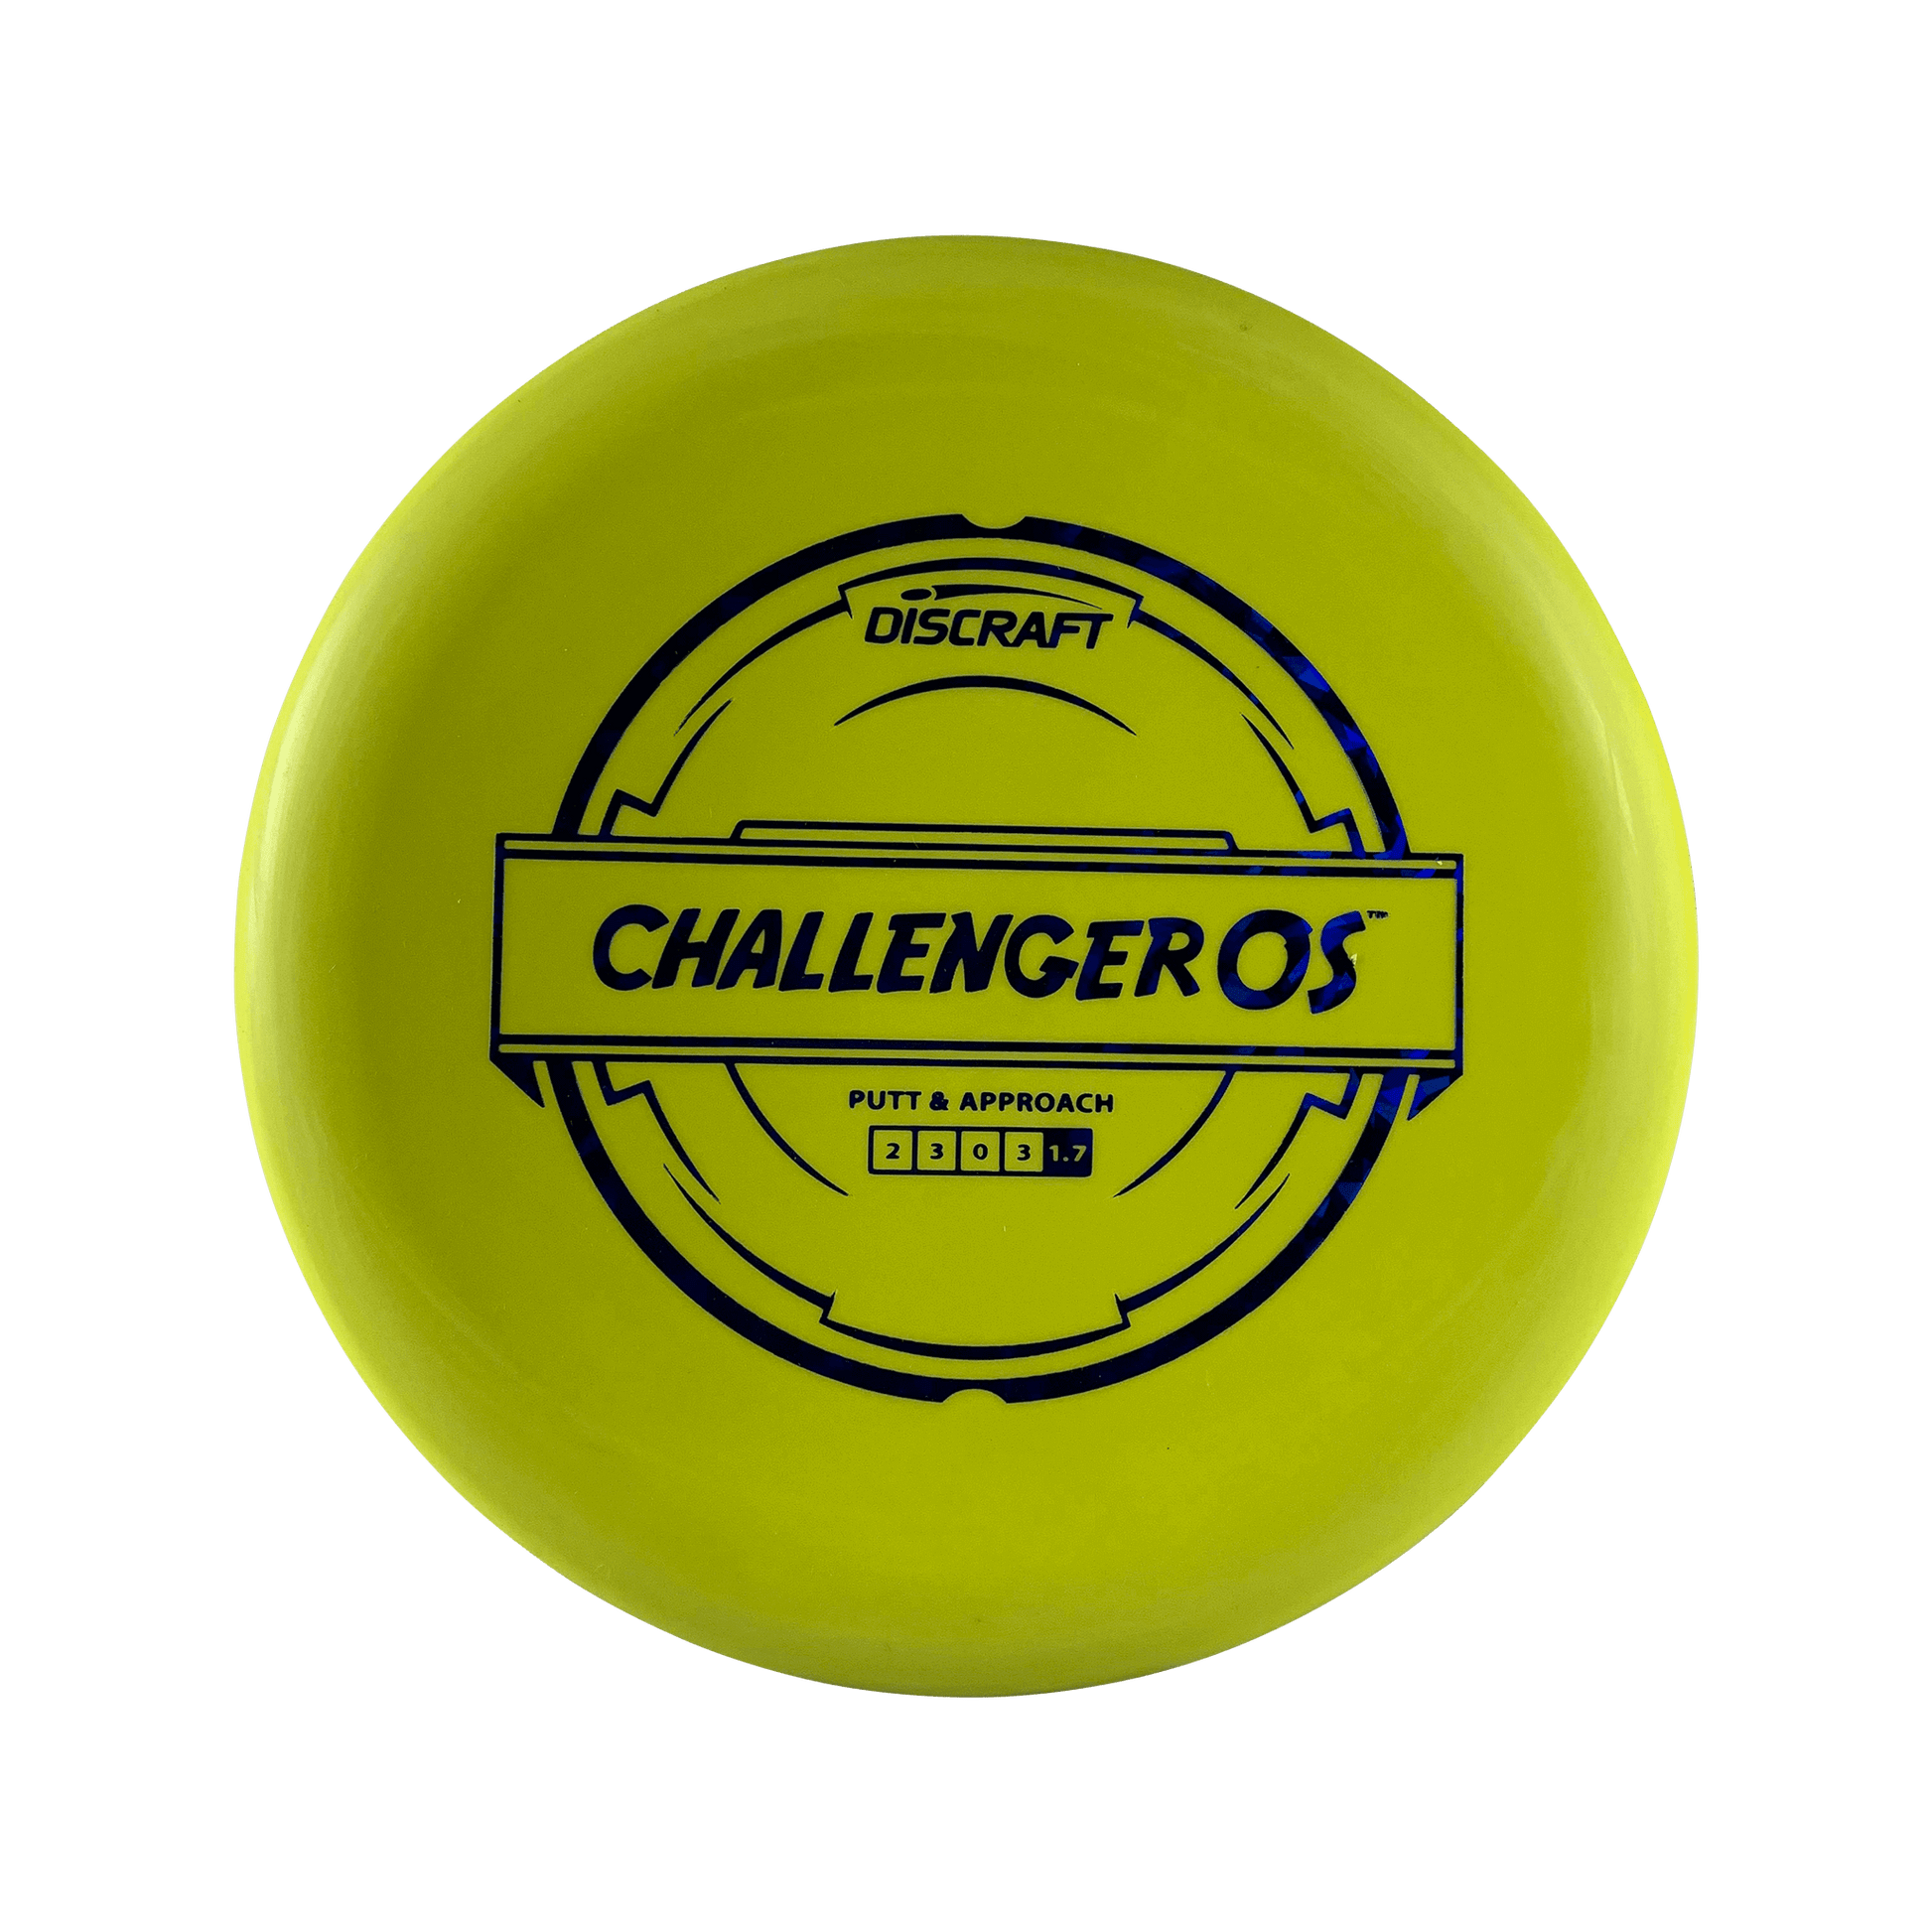 Putter Blend Challenger OS Disc Discraft yellow 173 